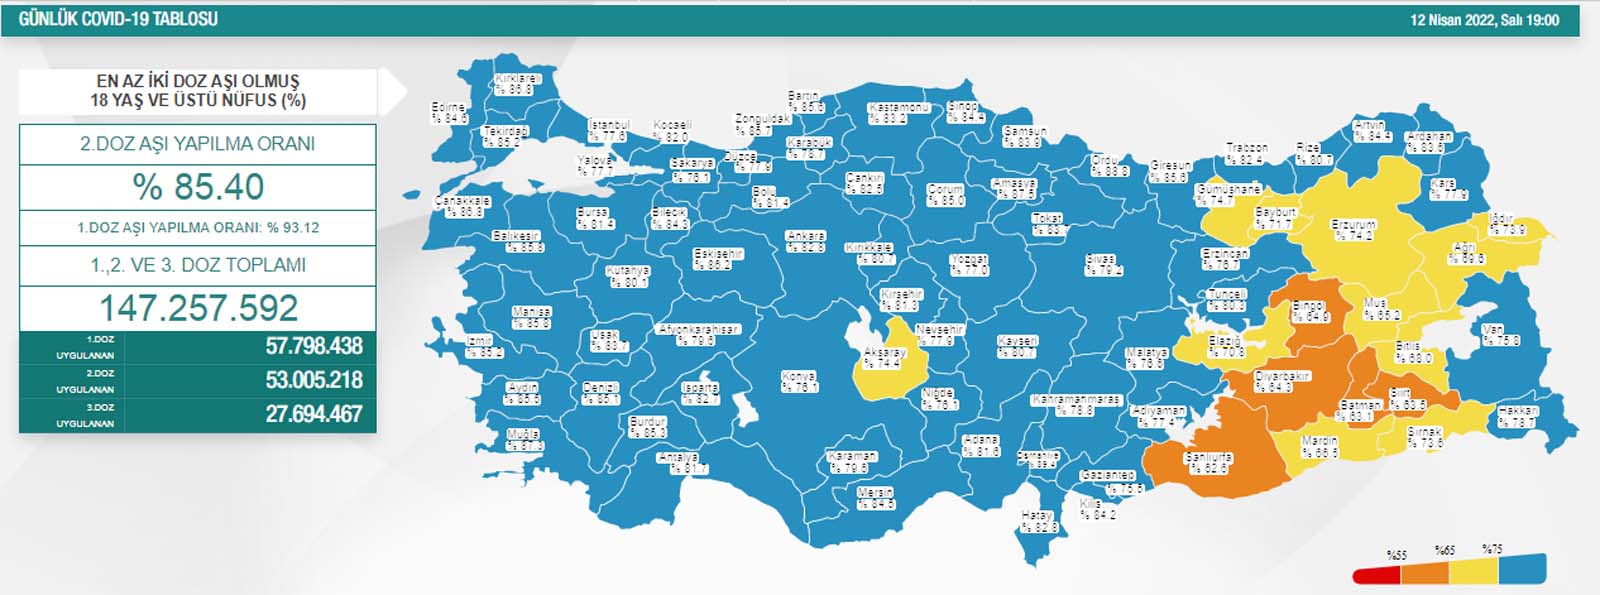 Son dakika: 13 Nisan 2022 Çarşamba Türkiye Günlük Koronavirüs Tablosu | Son 24 saat korona tablosu